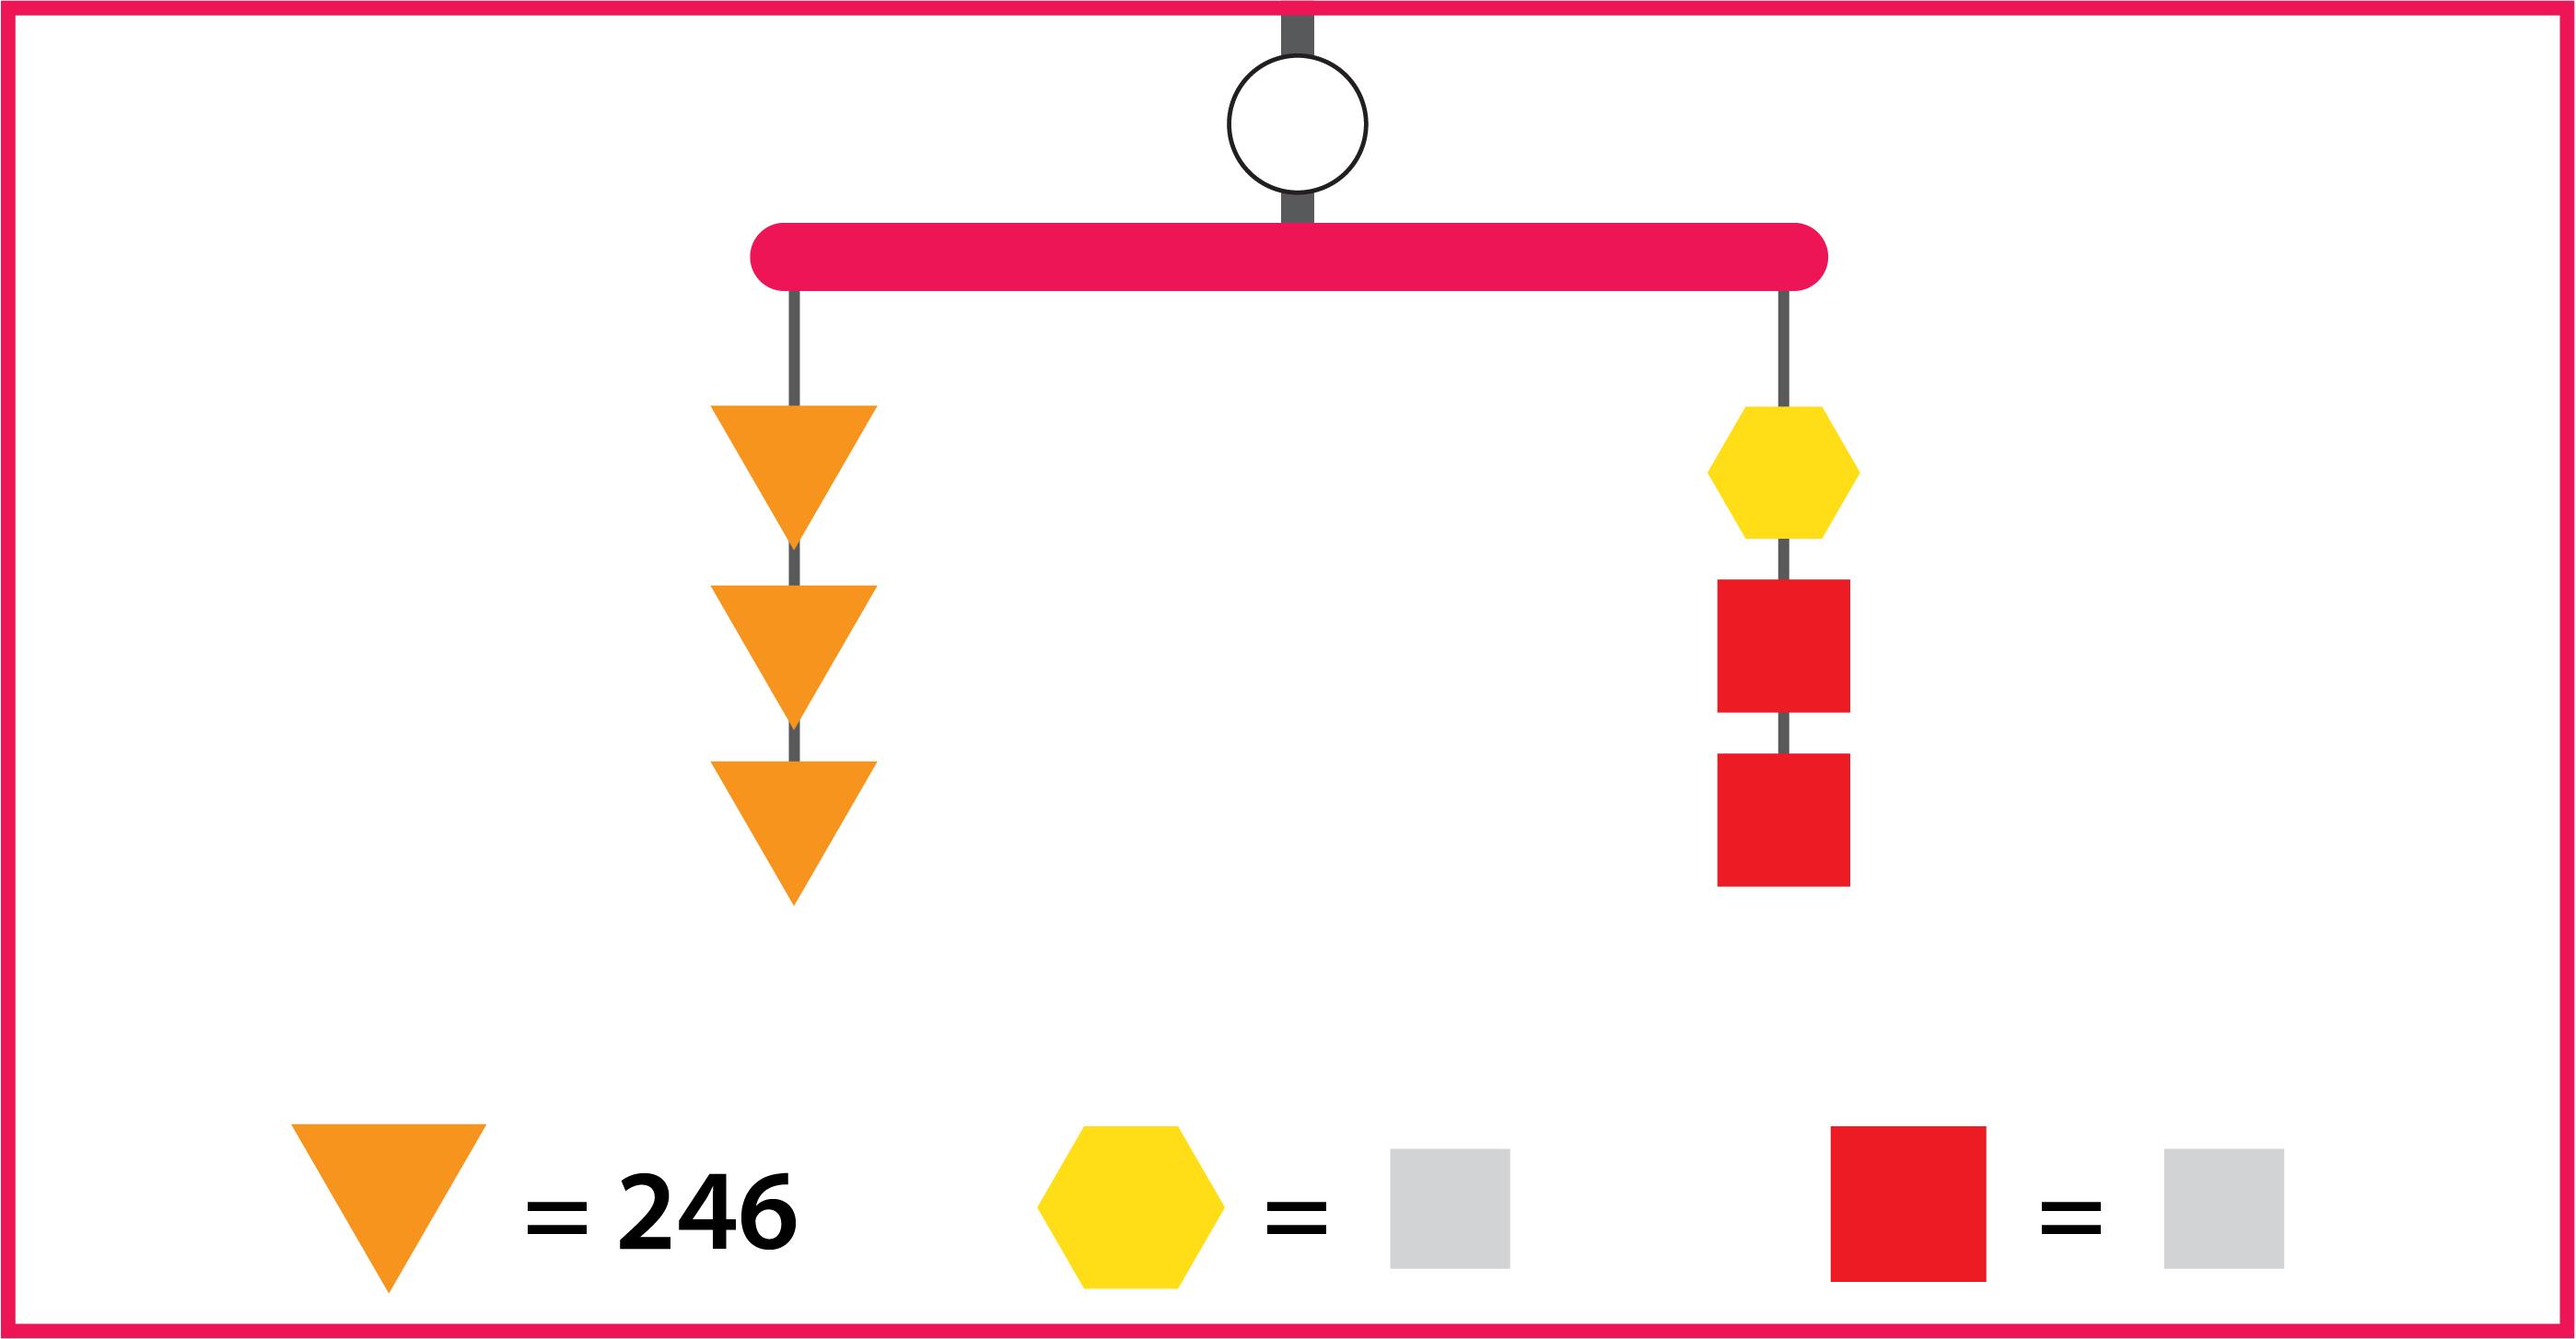 Un móvil equilibrado con un valor desconocido tiene 2 hilos. El hilo izquierdo tiene 3 triángulos anaranjados. El hilo derecho tiene 2 cuadrados rojos y 1 hexágono amarillo. El valor de cada triángulo es 246.